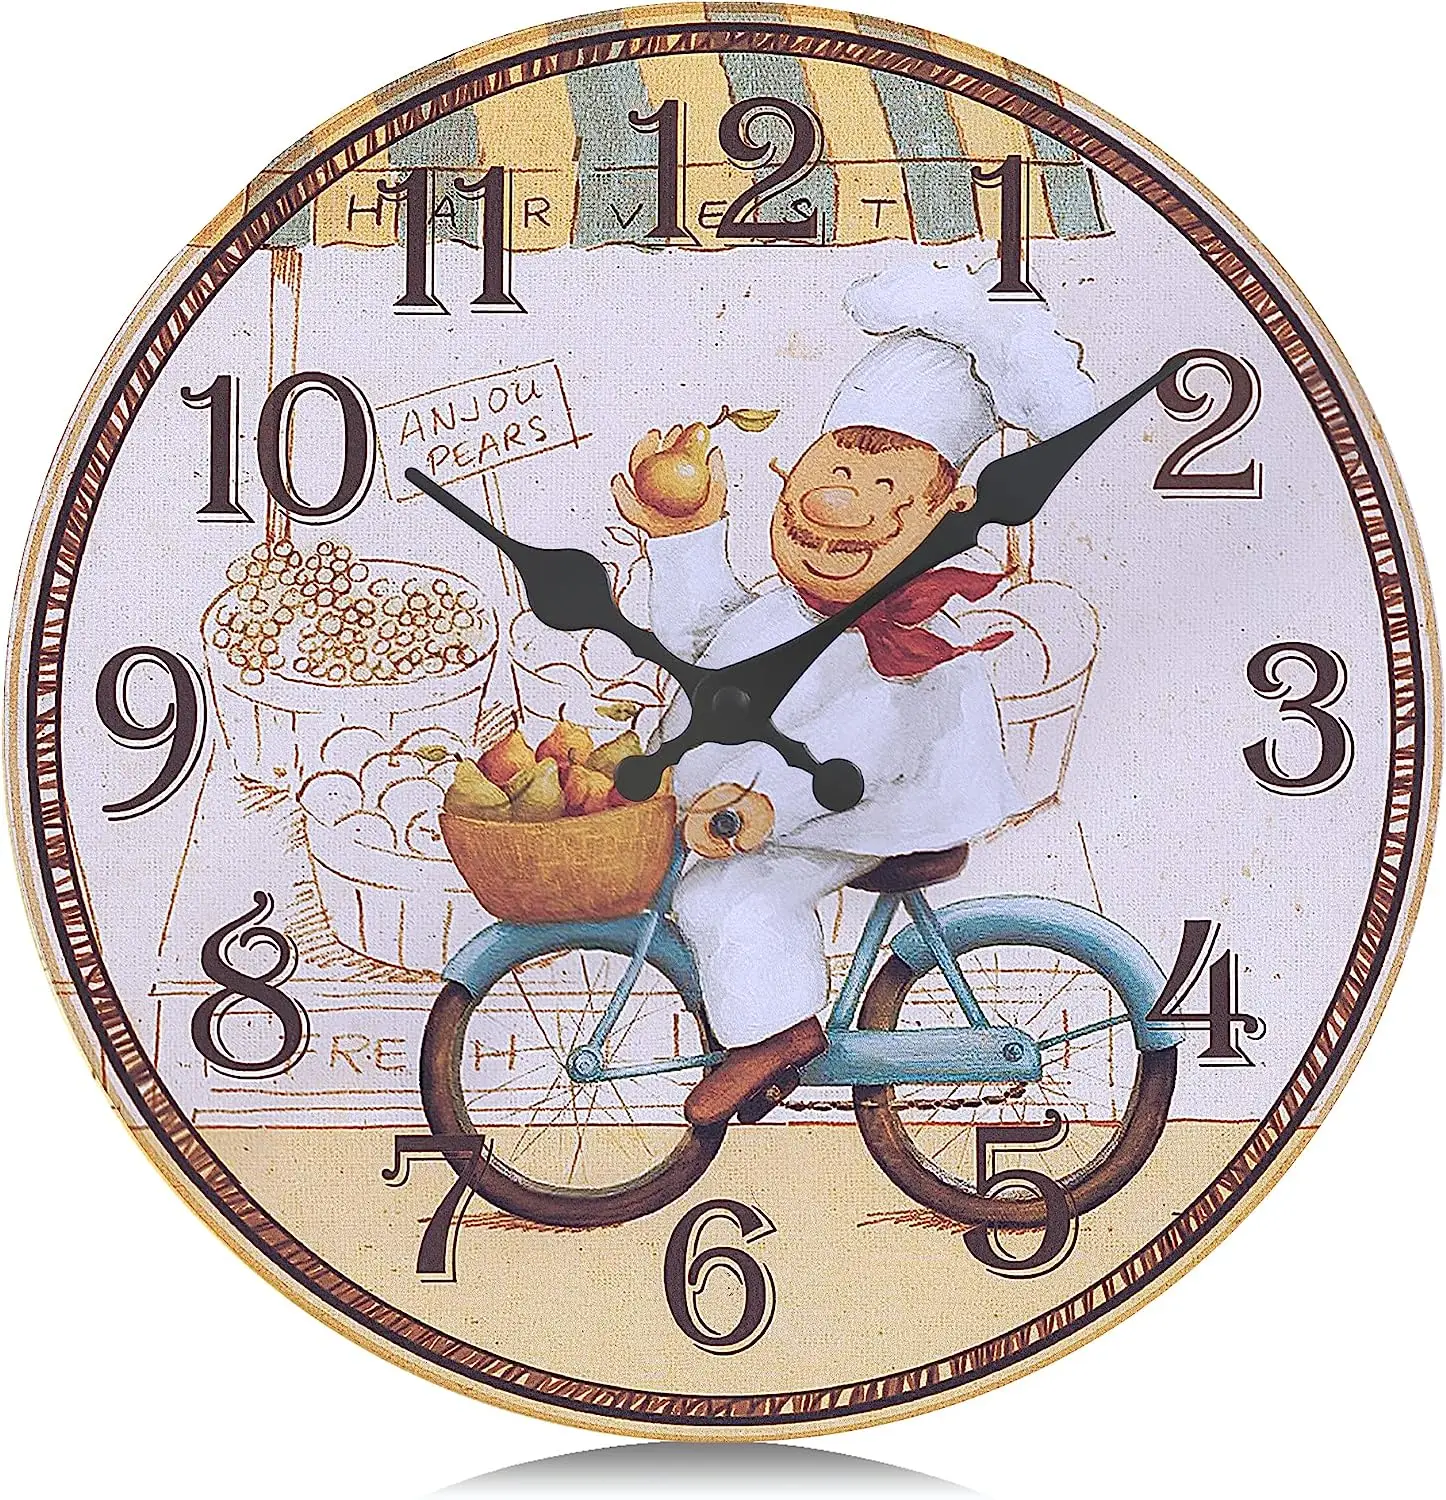 

Reloj de Pared Cocina Madera, Silencioso Reloj Amarillo Rustico Vintage Retro Decorativo Cocinero para Restaurante Comedor Sala